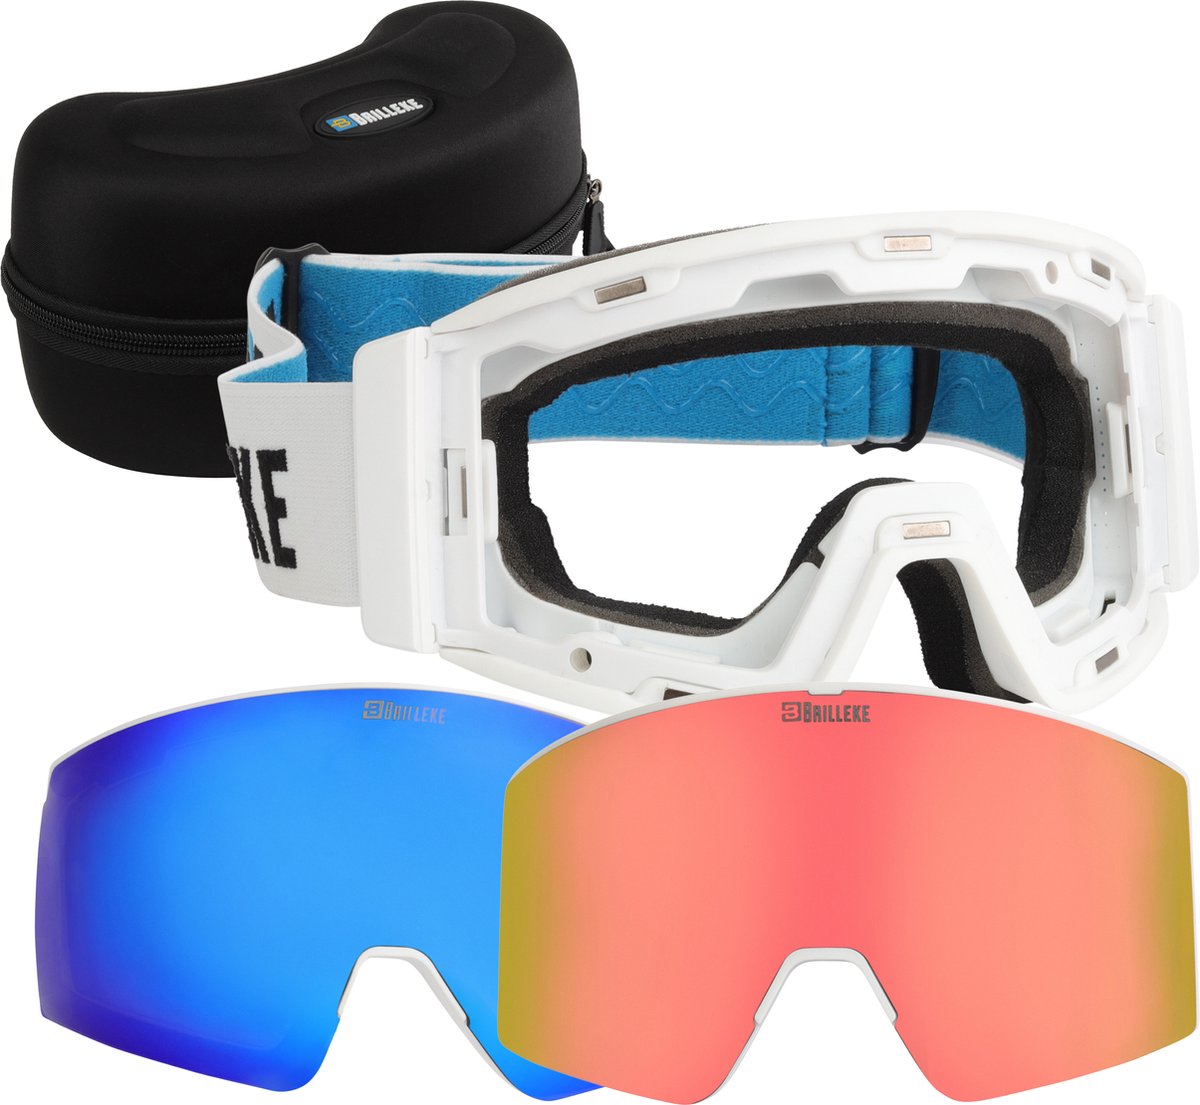 Brilleke® snowboardbril. Met 2 gekleurde lenzen, één voor goed en één voor slecht weer. Veilig opgeborgen in hardcase + extra lensbeschermer. (Wit)